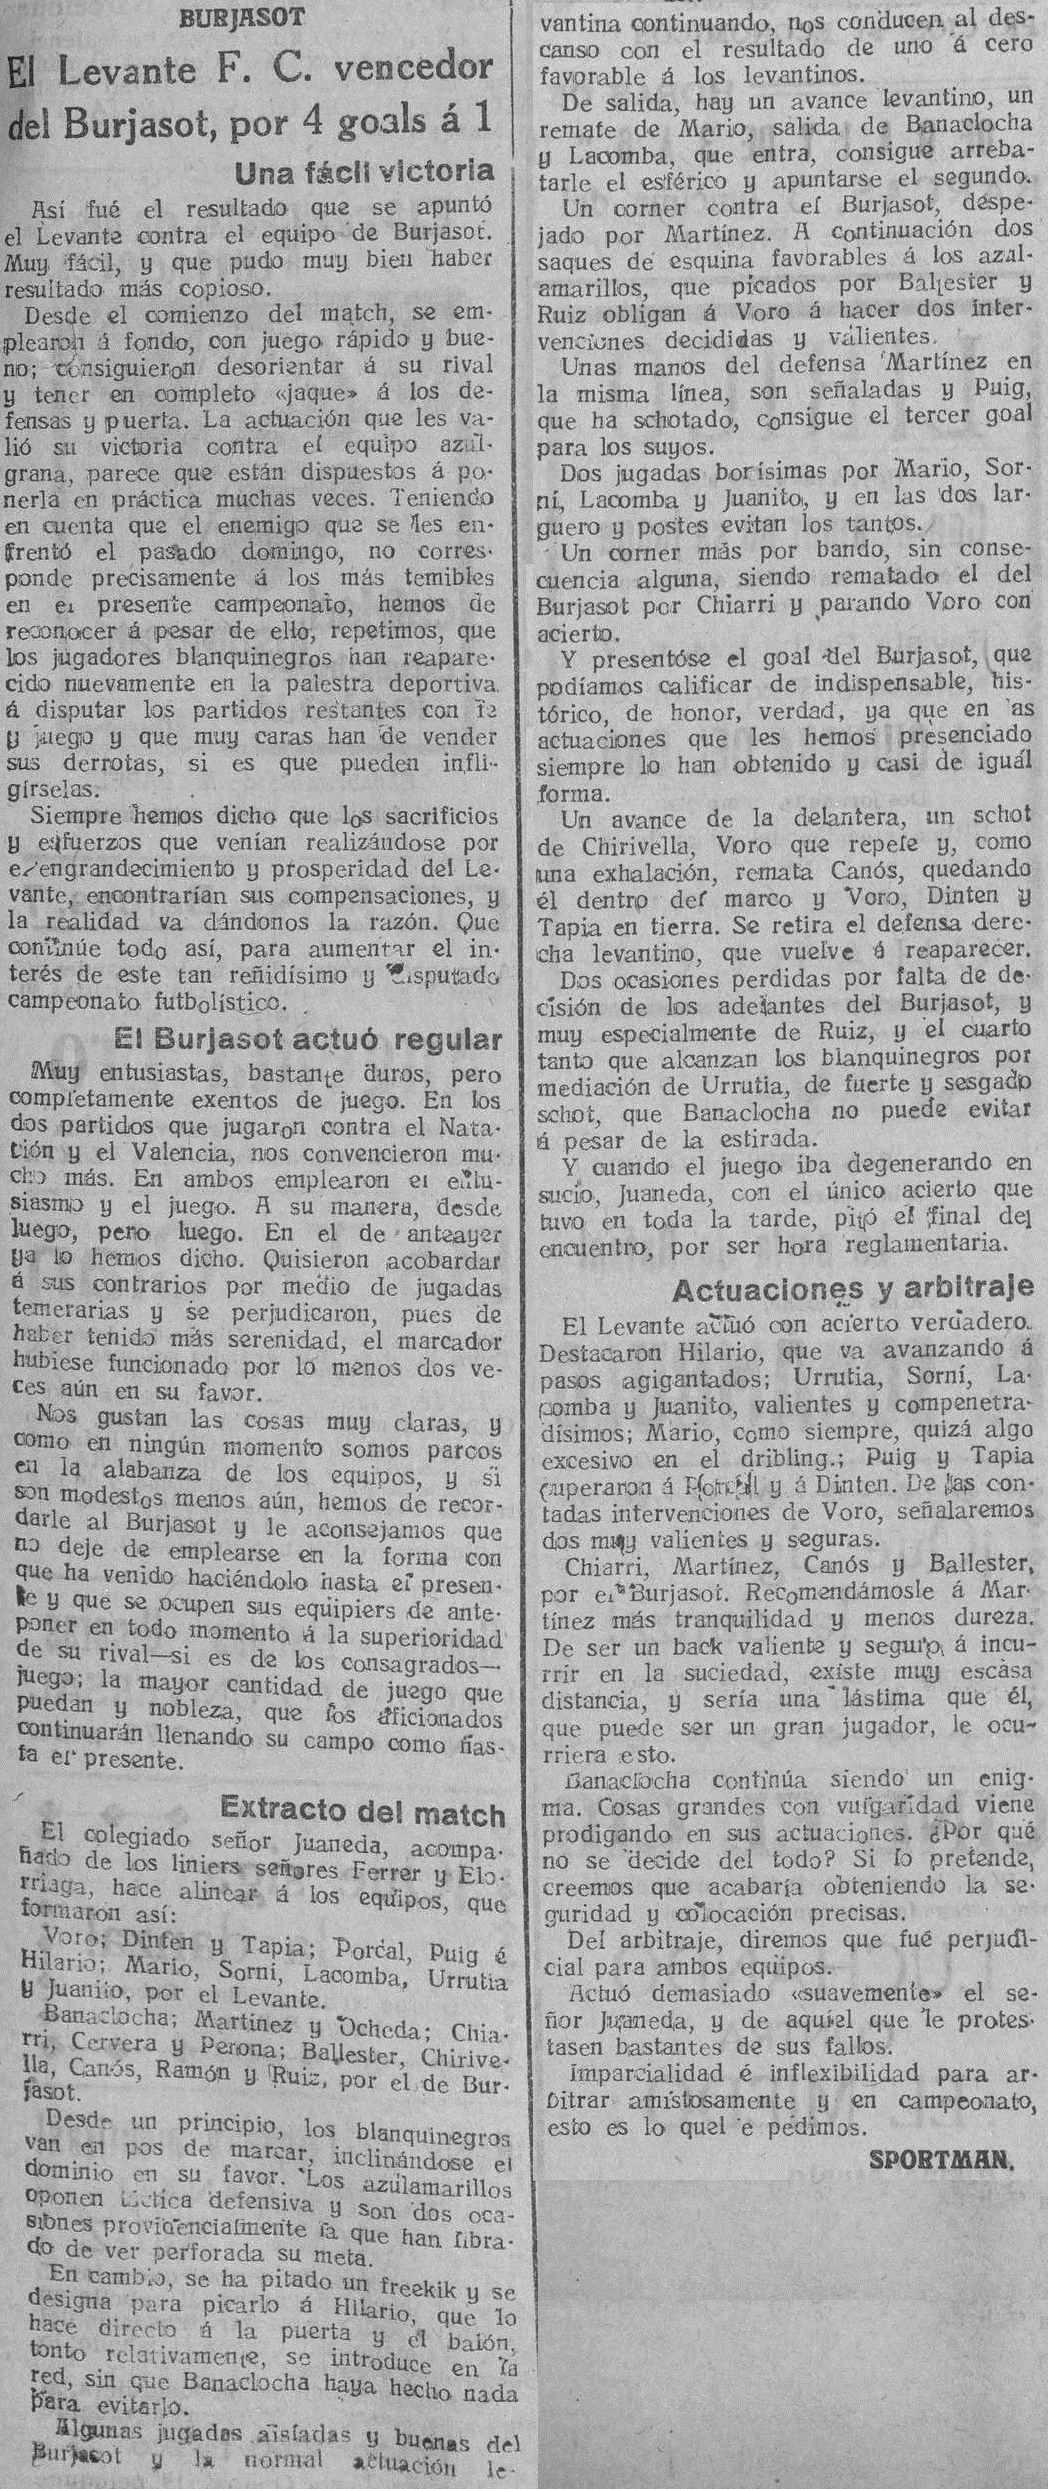 1926.01.24 (24 января 1926), Буржасот - Леванте, 1-4.png